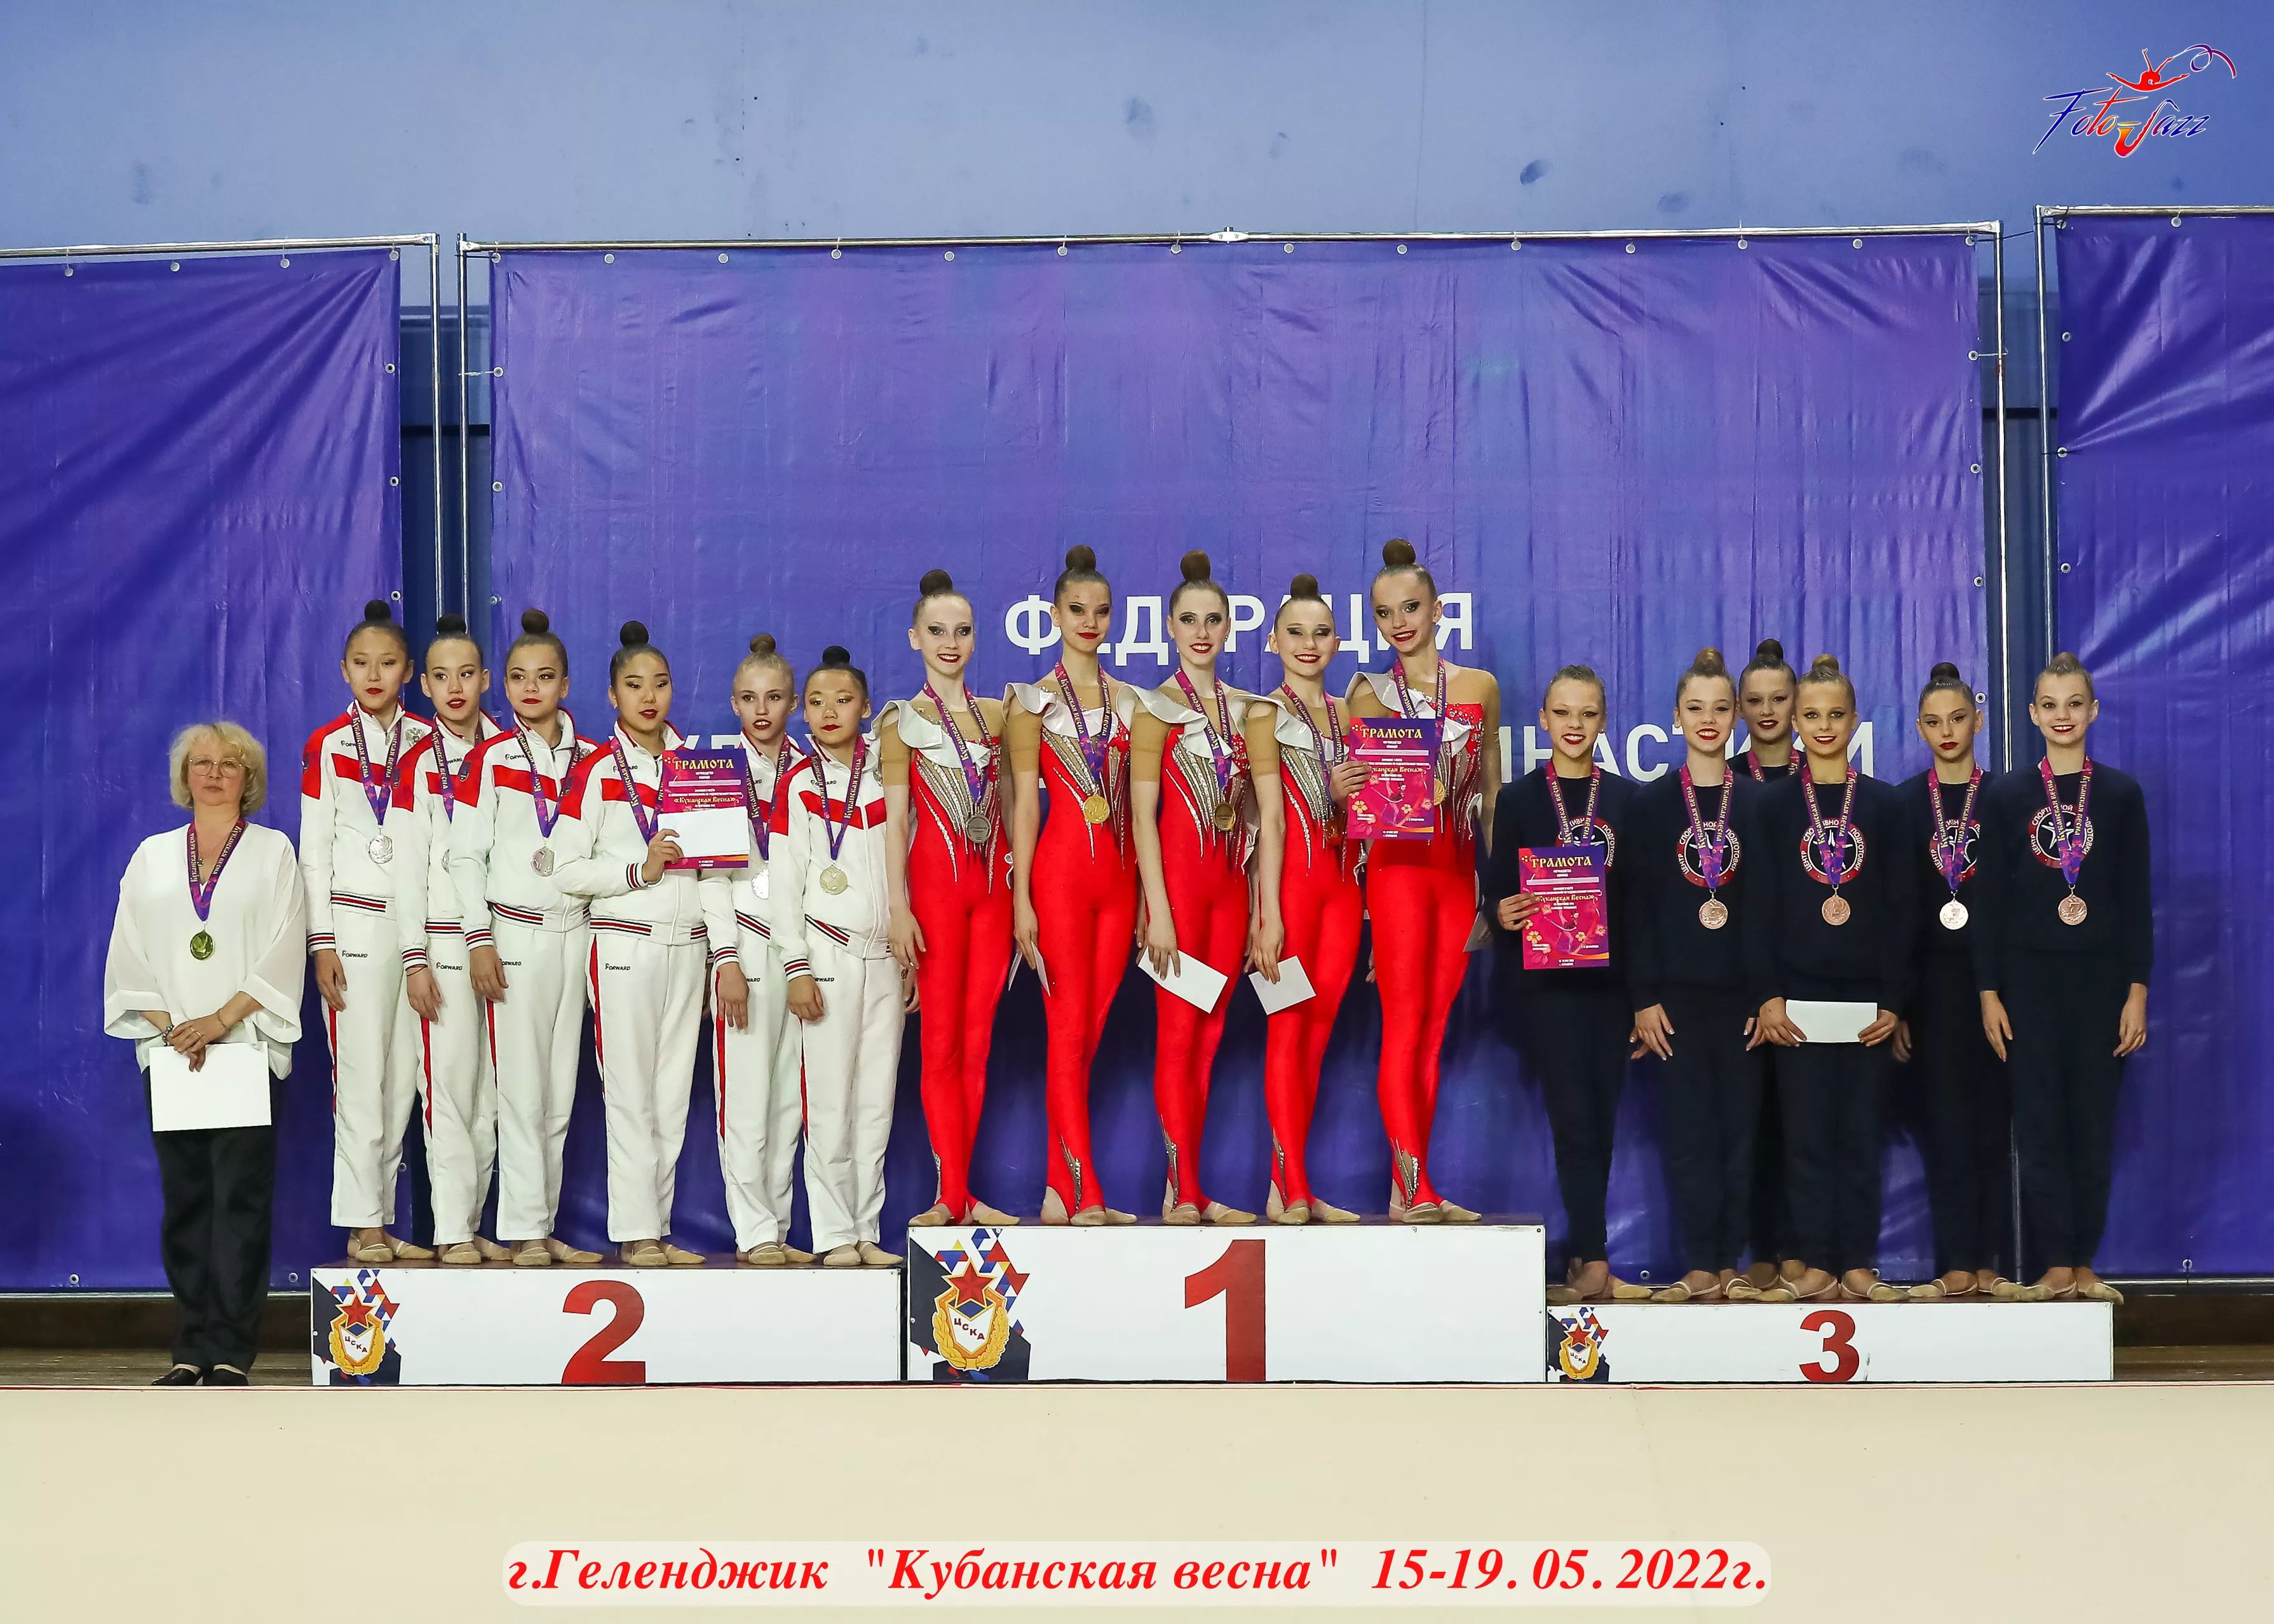 Гимнастки Кубани завоевали абсолютное большинство медалей на Всероссийских  соревнованиях по художественной гимнастике. 20.05.2022 г. Телеканал « Краснодар»